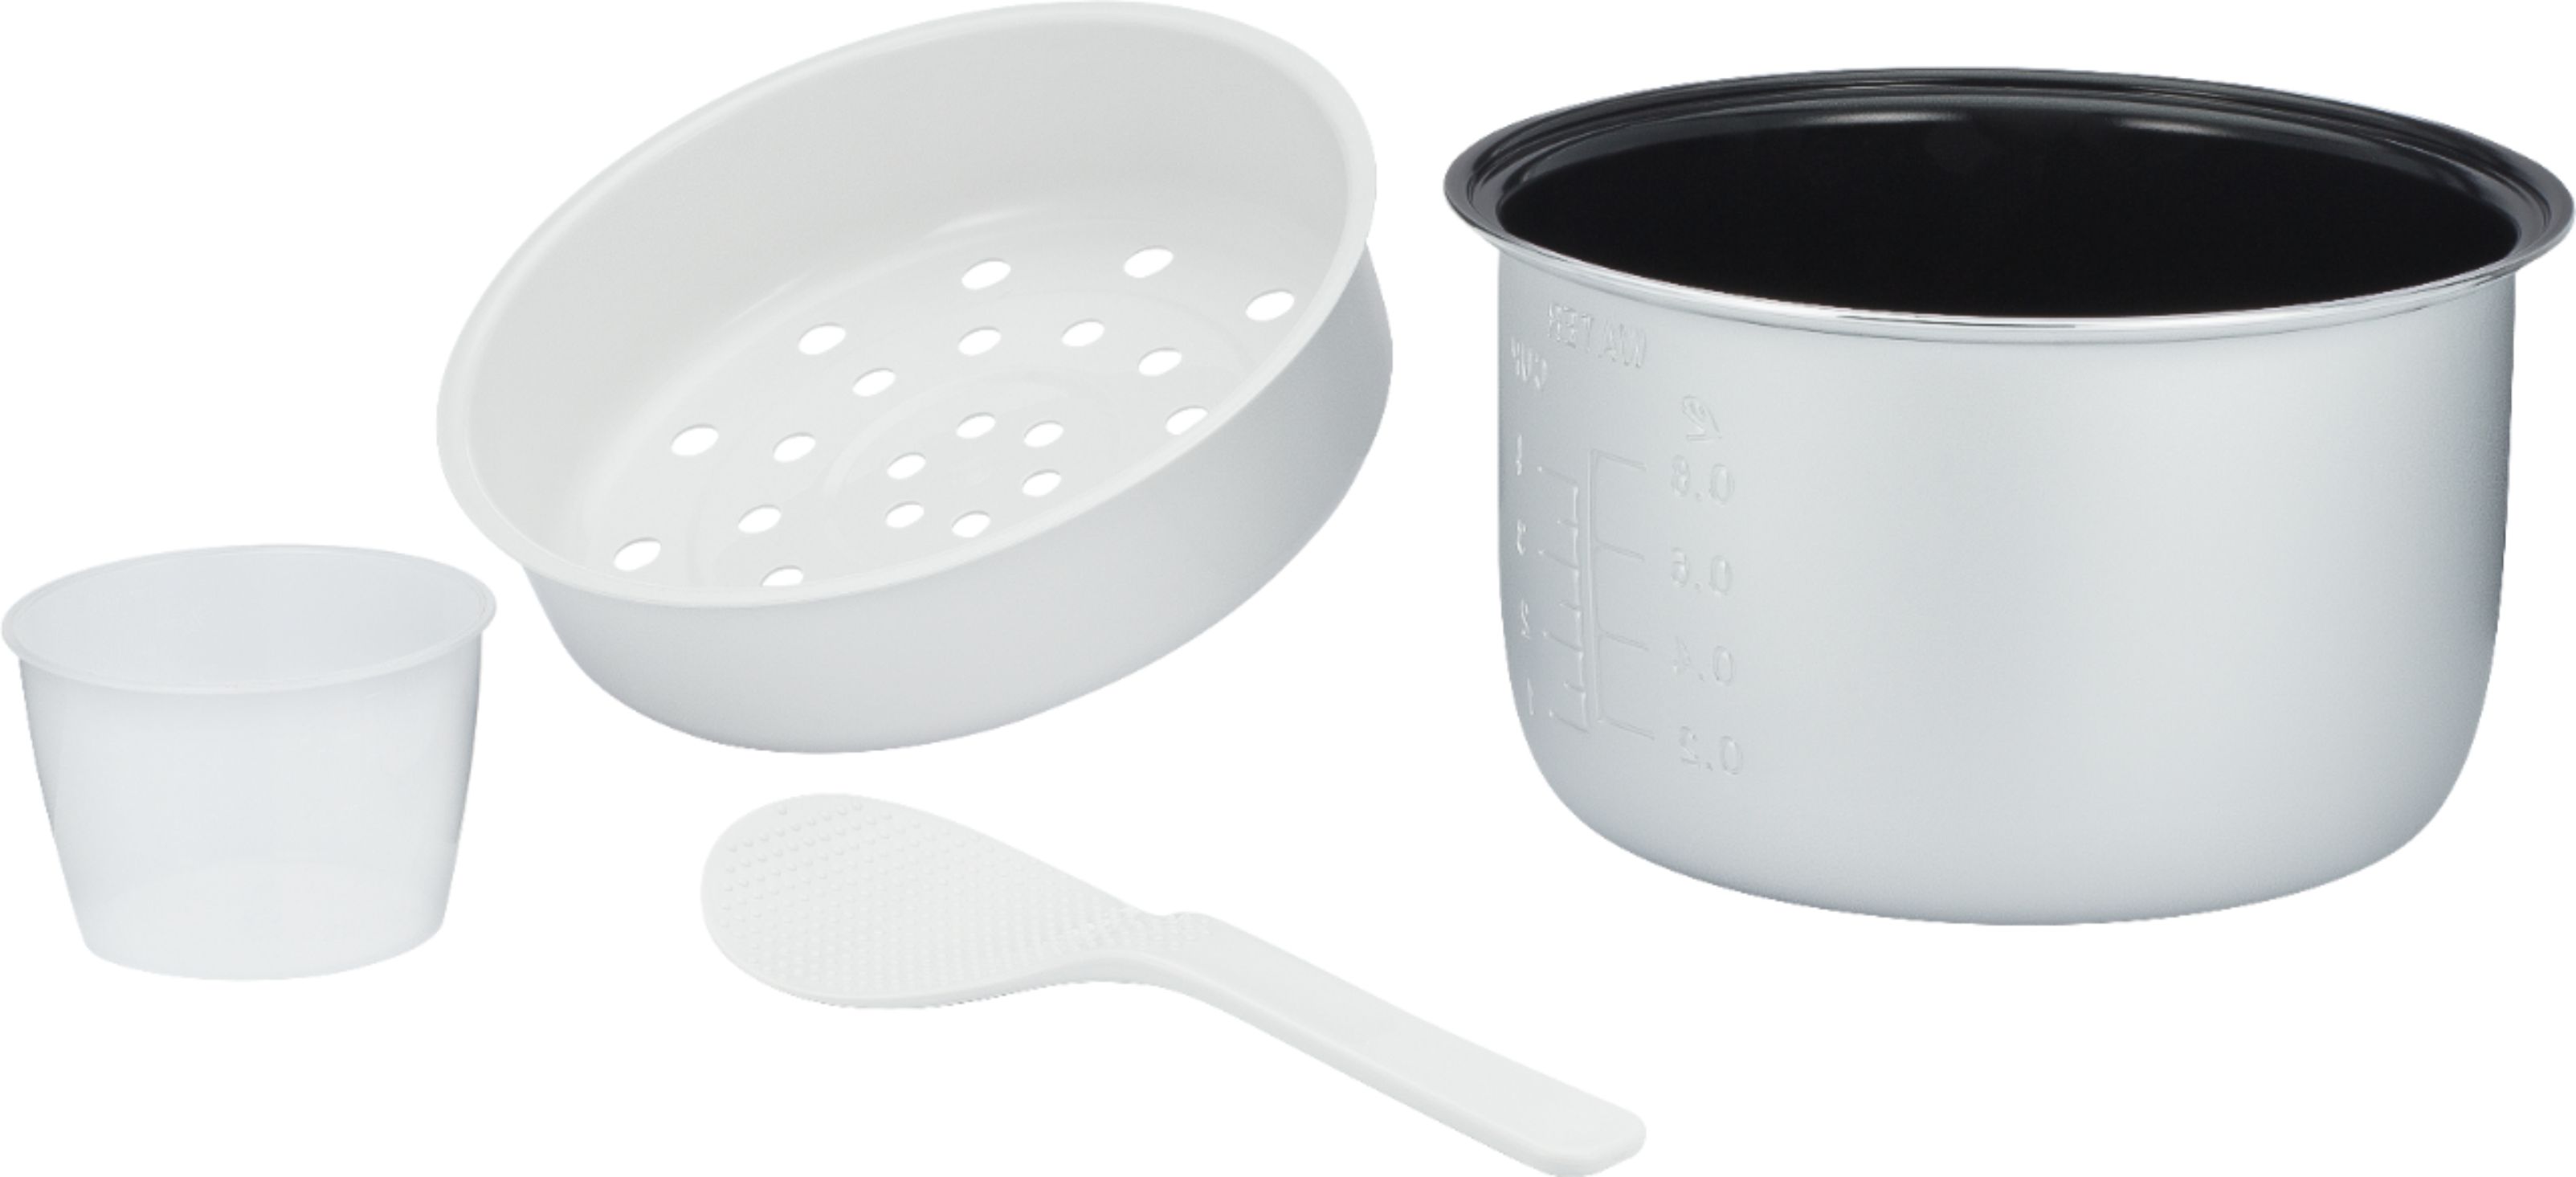 Instant Pot Instant 20-cup Multigrain Cooker White 140-5003-01 - Best Buy